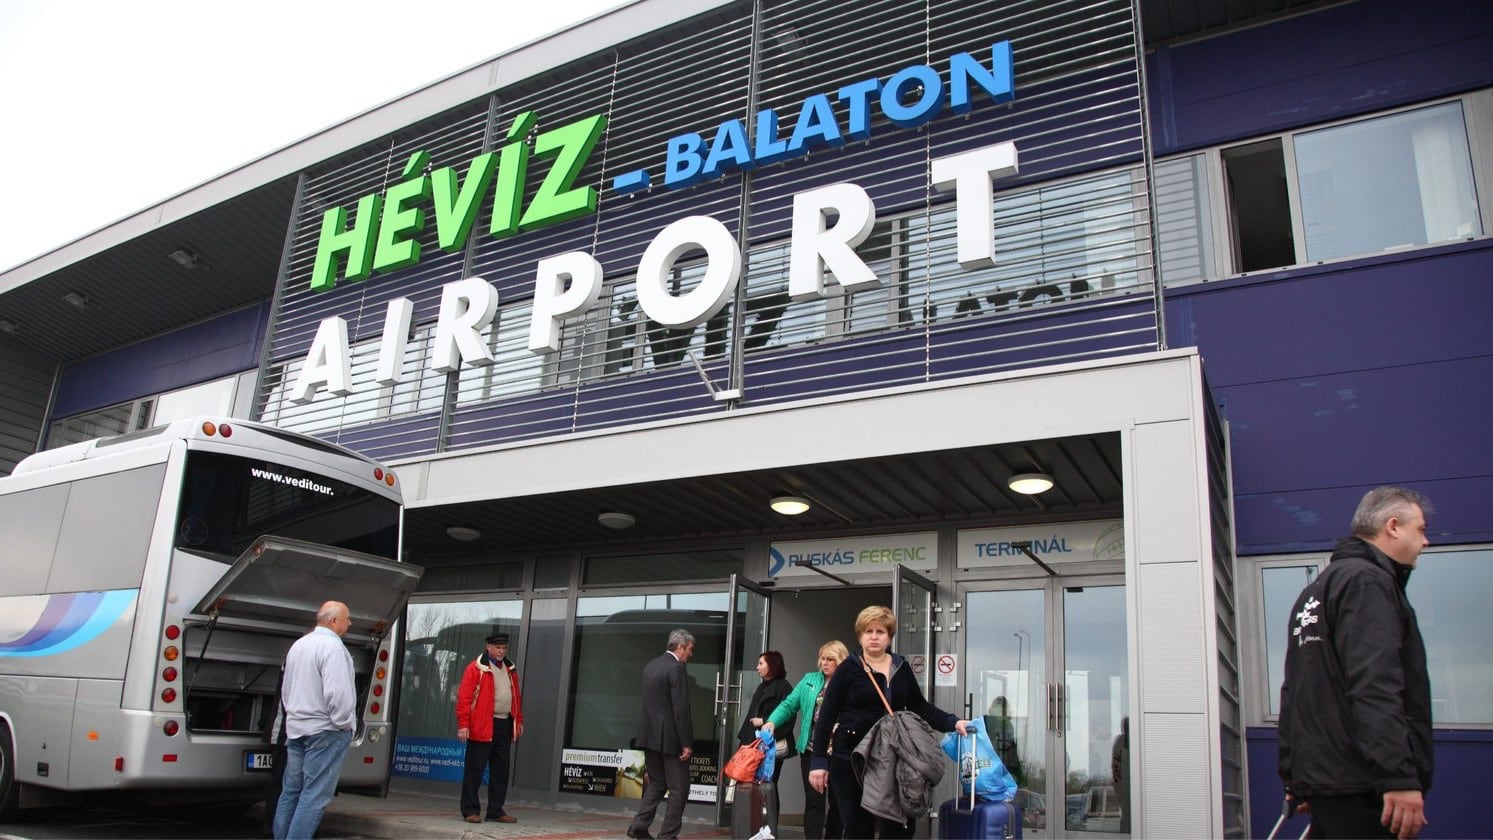 Ab April befindet sich der Flughafen Hévíz-Balaton wieder in Staatsbesitz